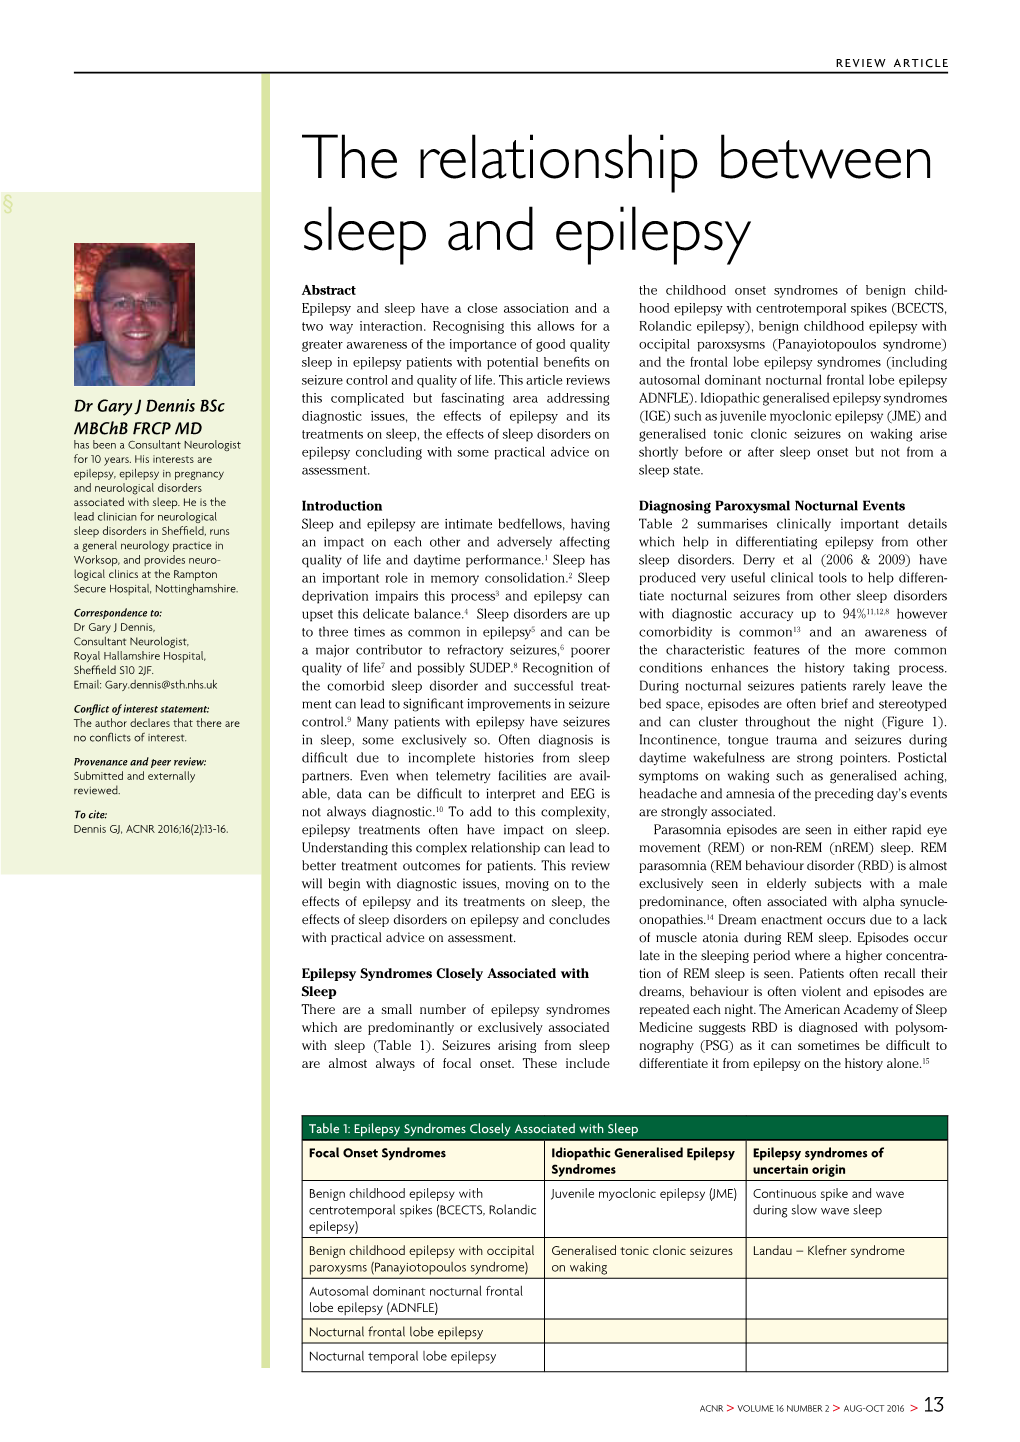 The Relationship Between Sleep and Epilepsy